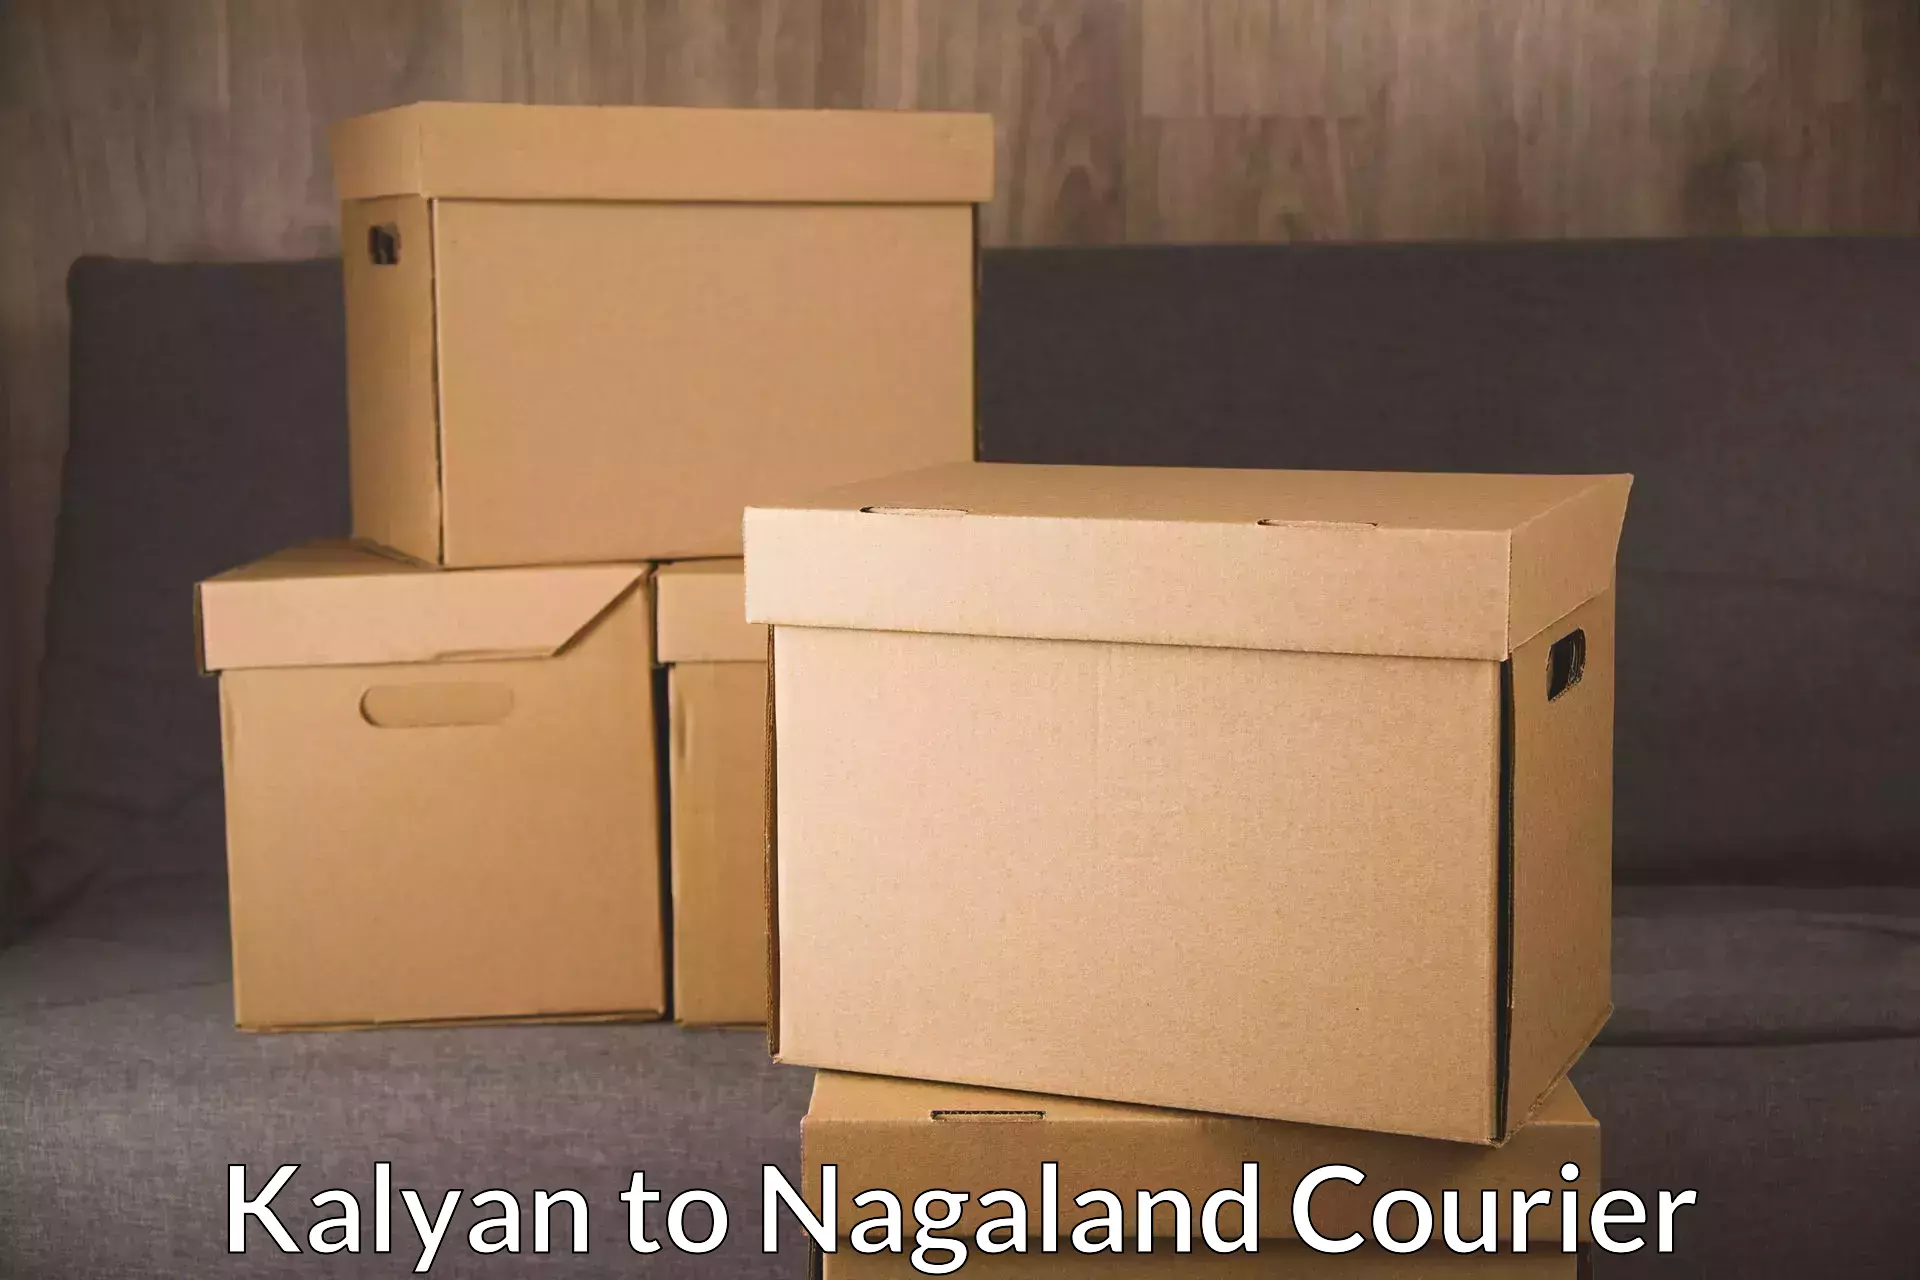 Global shipping solutions Kalyan to NIT Nagaland